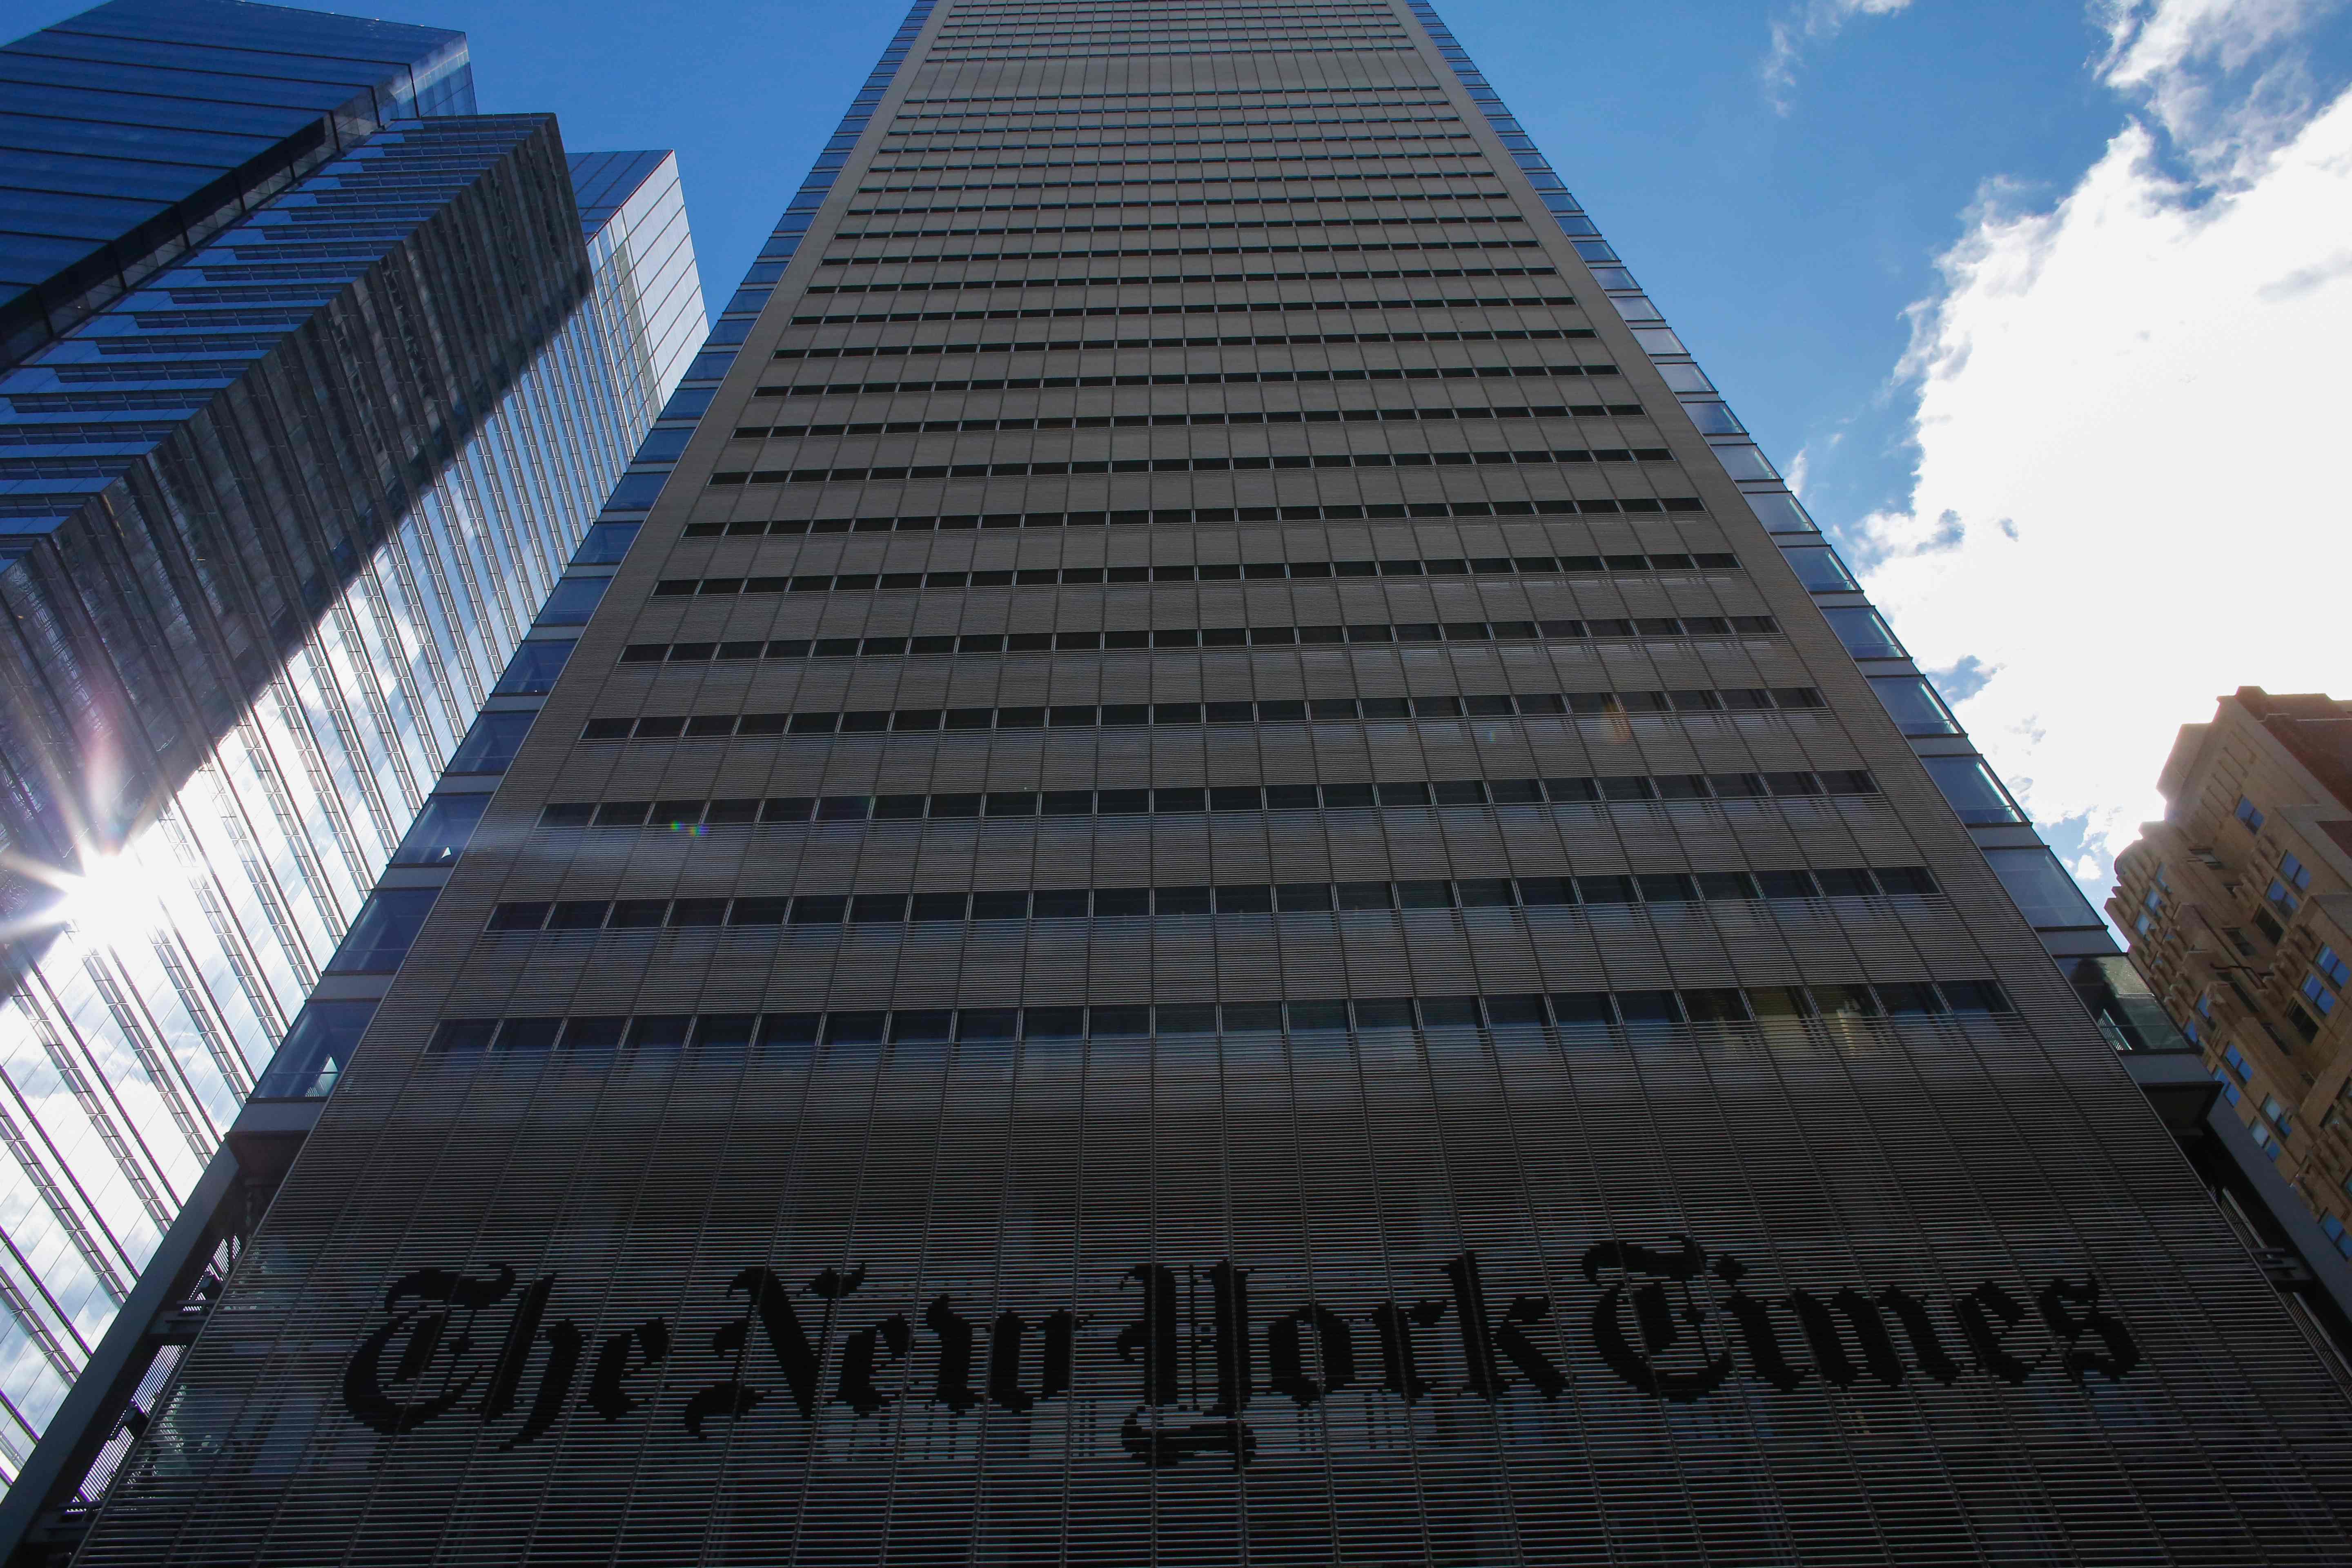 مبنى صحيفة نيويورك تايمز